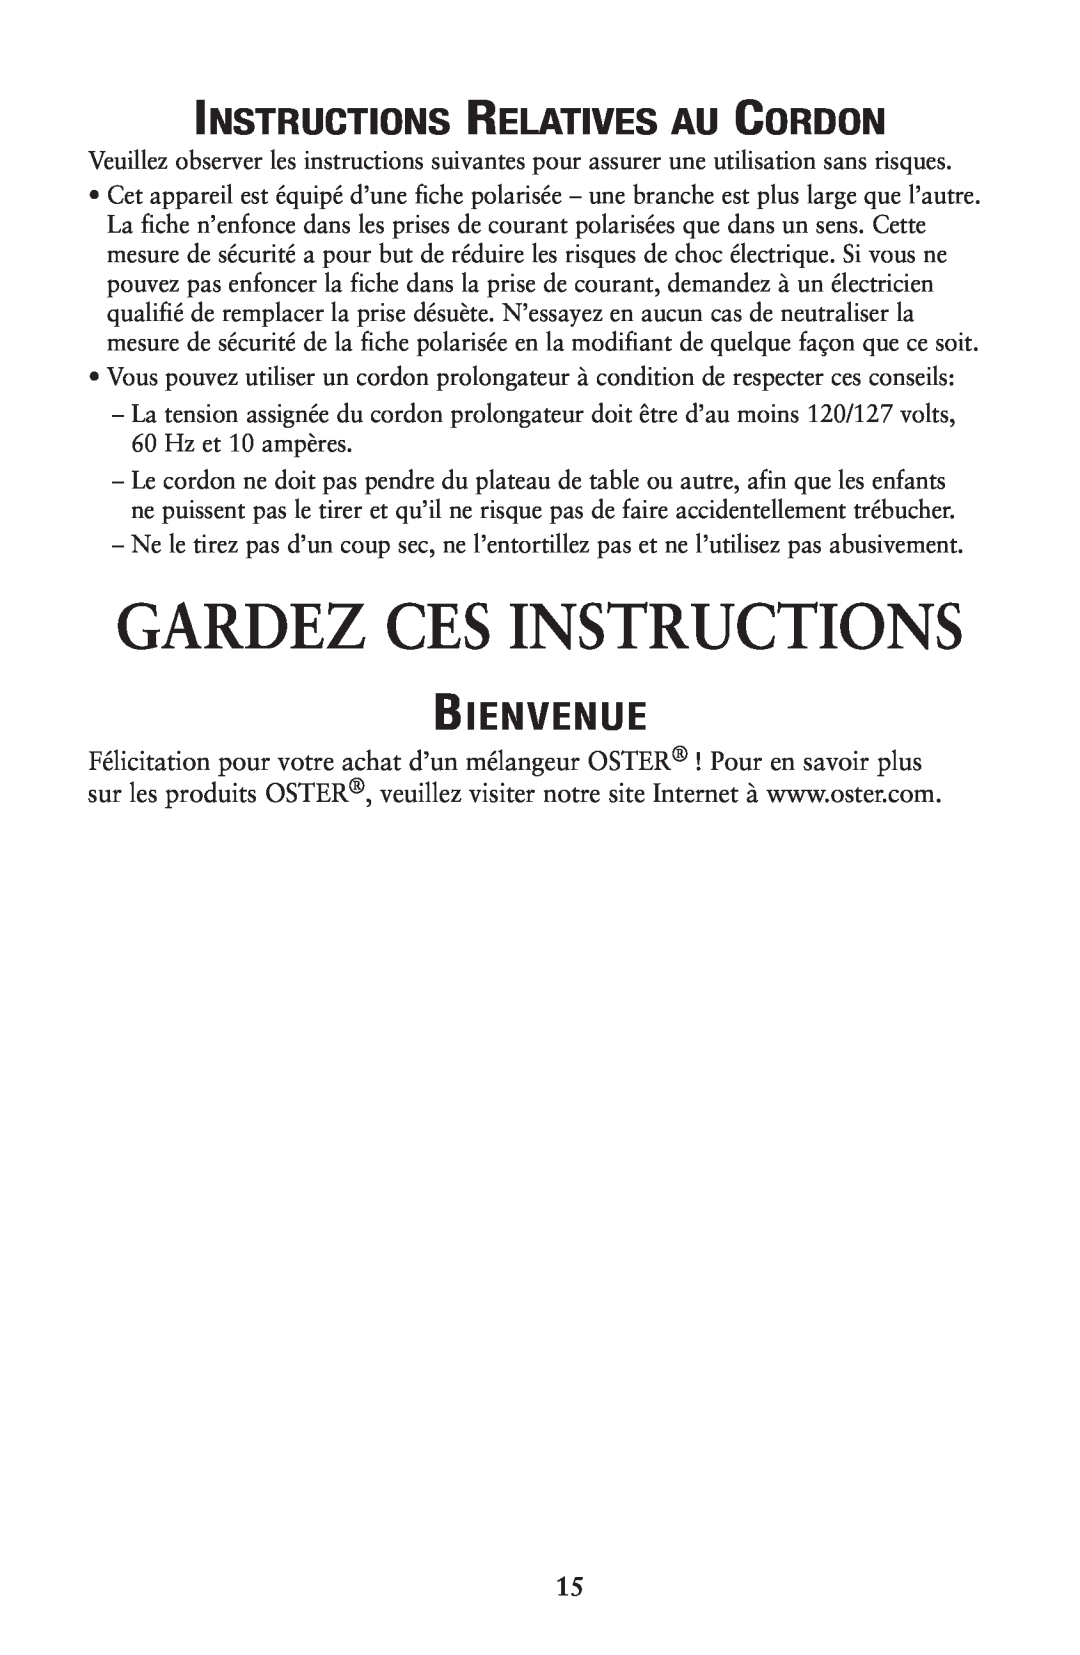 Oster P.N. 133086 user manual Gardez Ces Instructions, Instructions Relatives Au Cordon, Bienvenue 